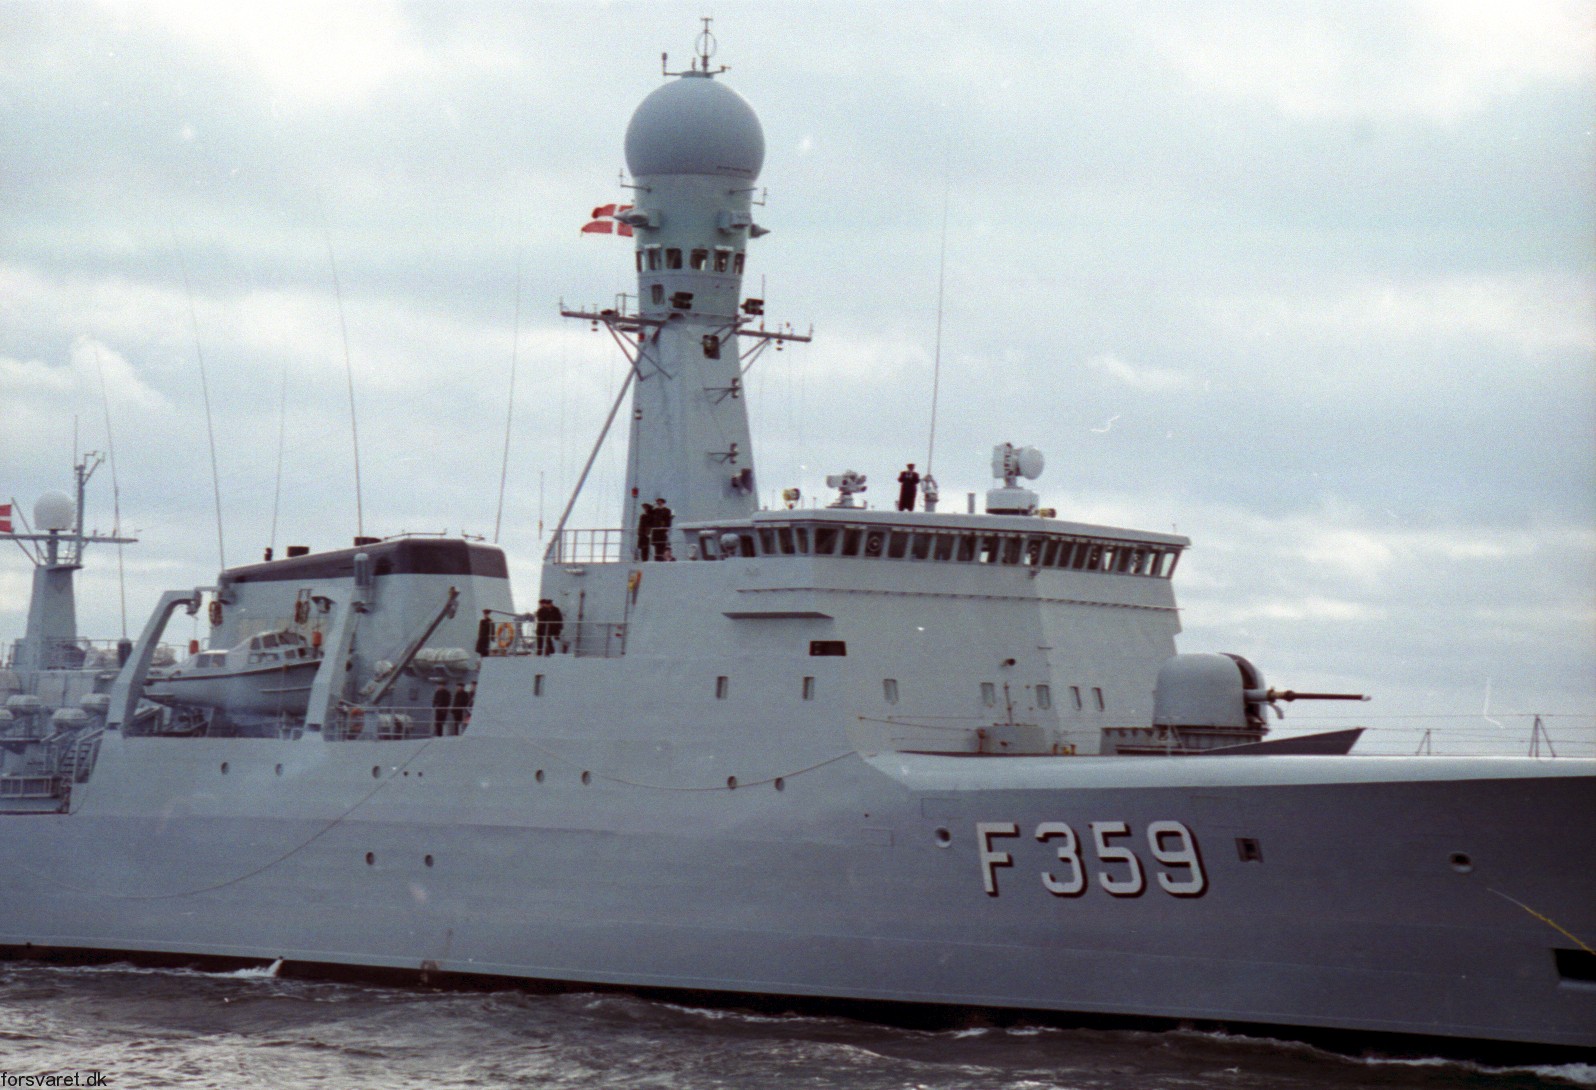 f-359 hdms vaedderen thetis class ocean patrol frigate royal danish navy kongelige danske marine kdm inspektionsskibet 15